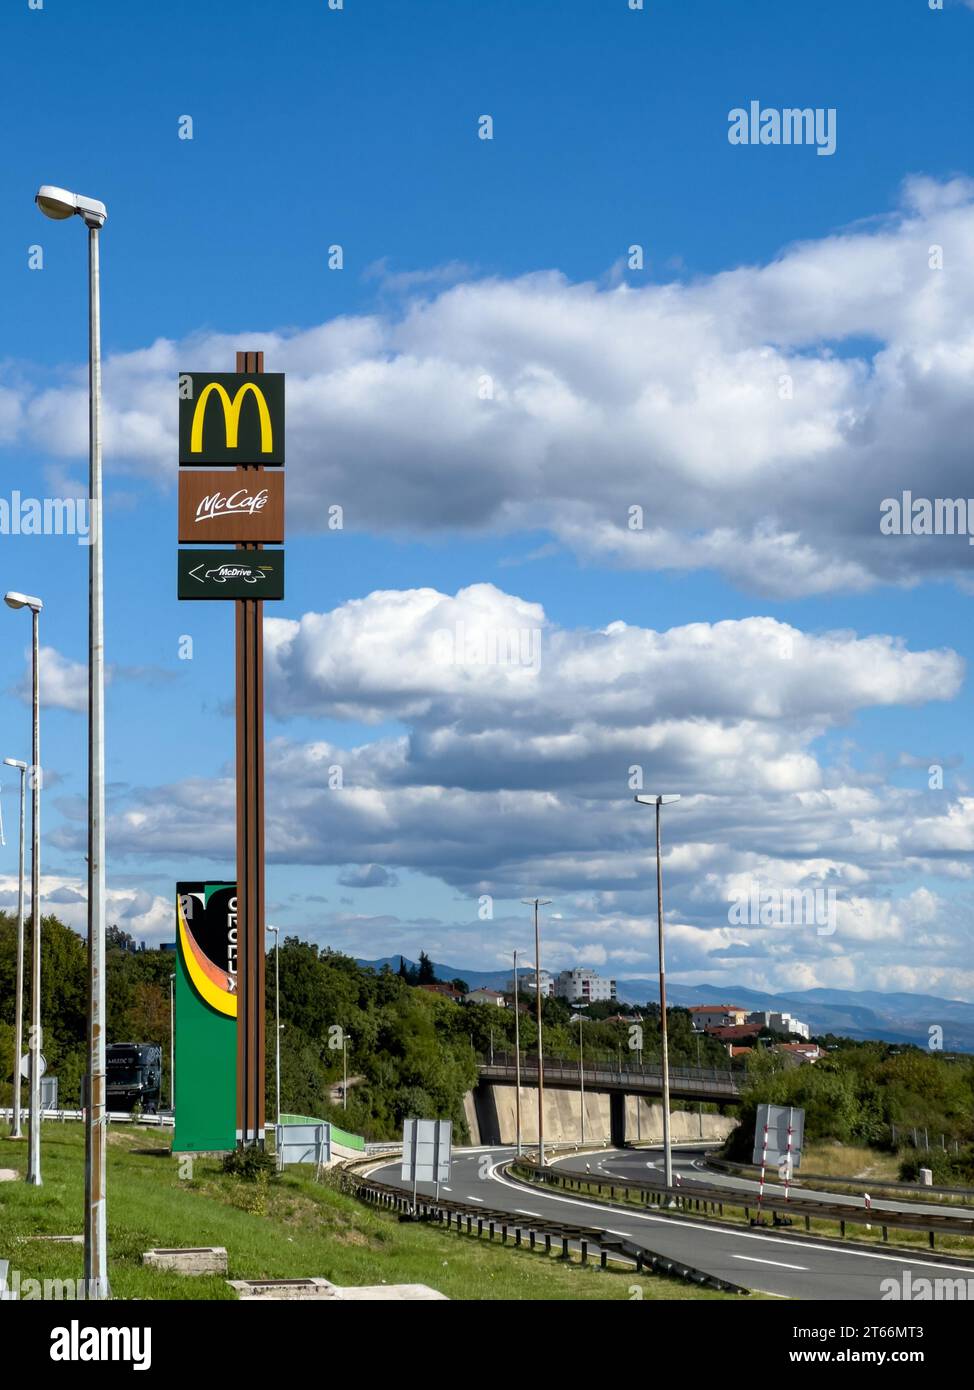 Rome, Italie - 09 août 2023 : logo McDonalds sur un poteau près de l'autoroute dans les montagnes Banque D'Images